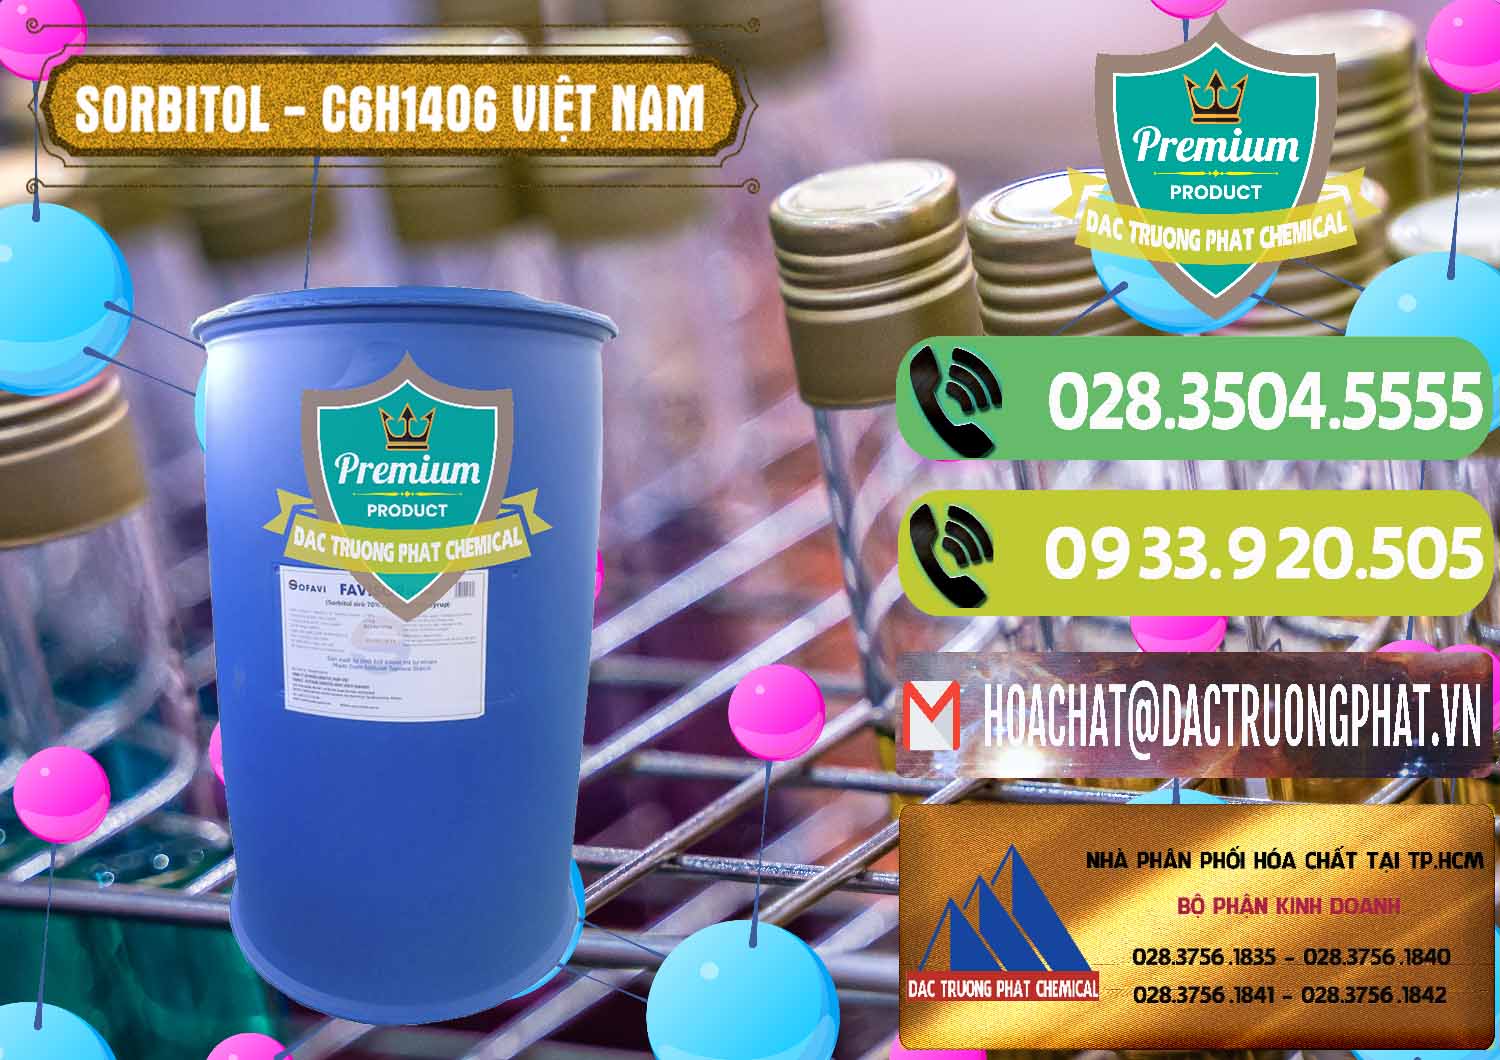 Đơn vị chuyên phân phối - cung ứng Sorbitol - C6H14O6 Lỏng 70% Food Grade Việt Nam - 0438 - Công ty kinh doanh & cung cấp hóa chất tại TP.HCM - hoachatmientay.vn